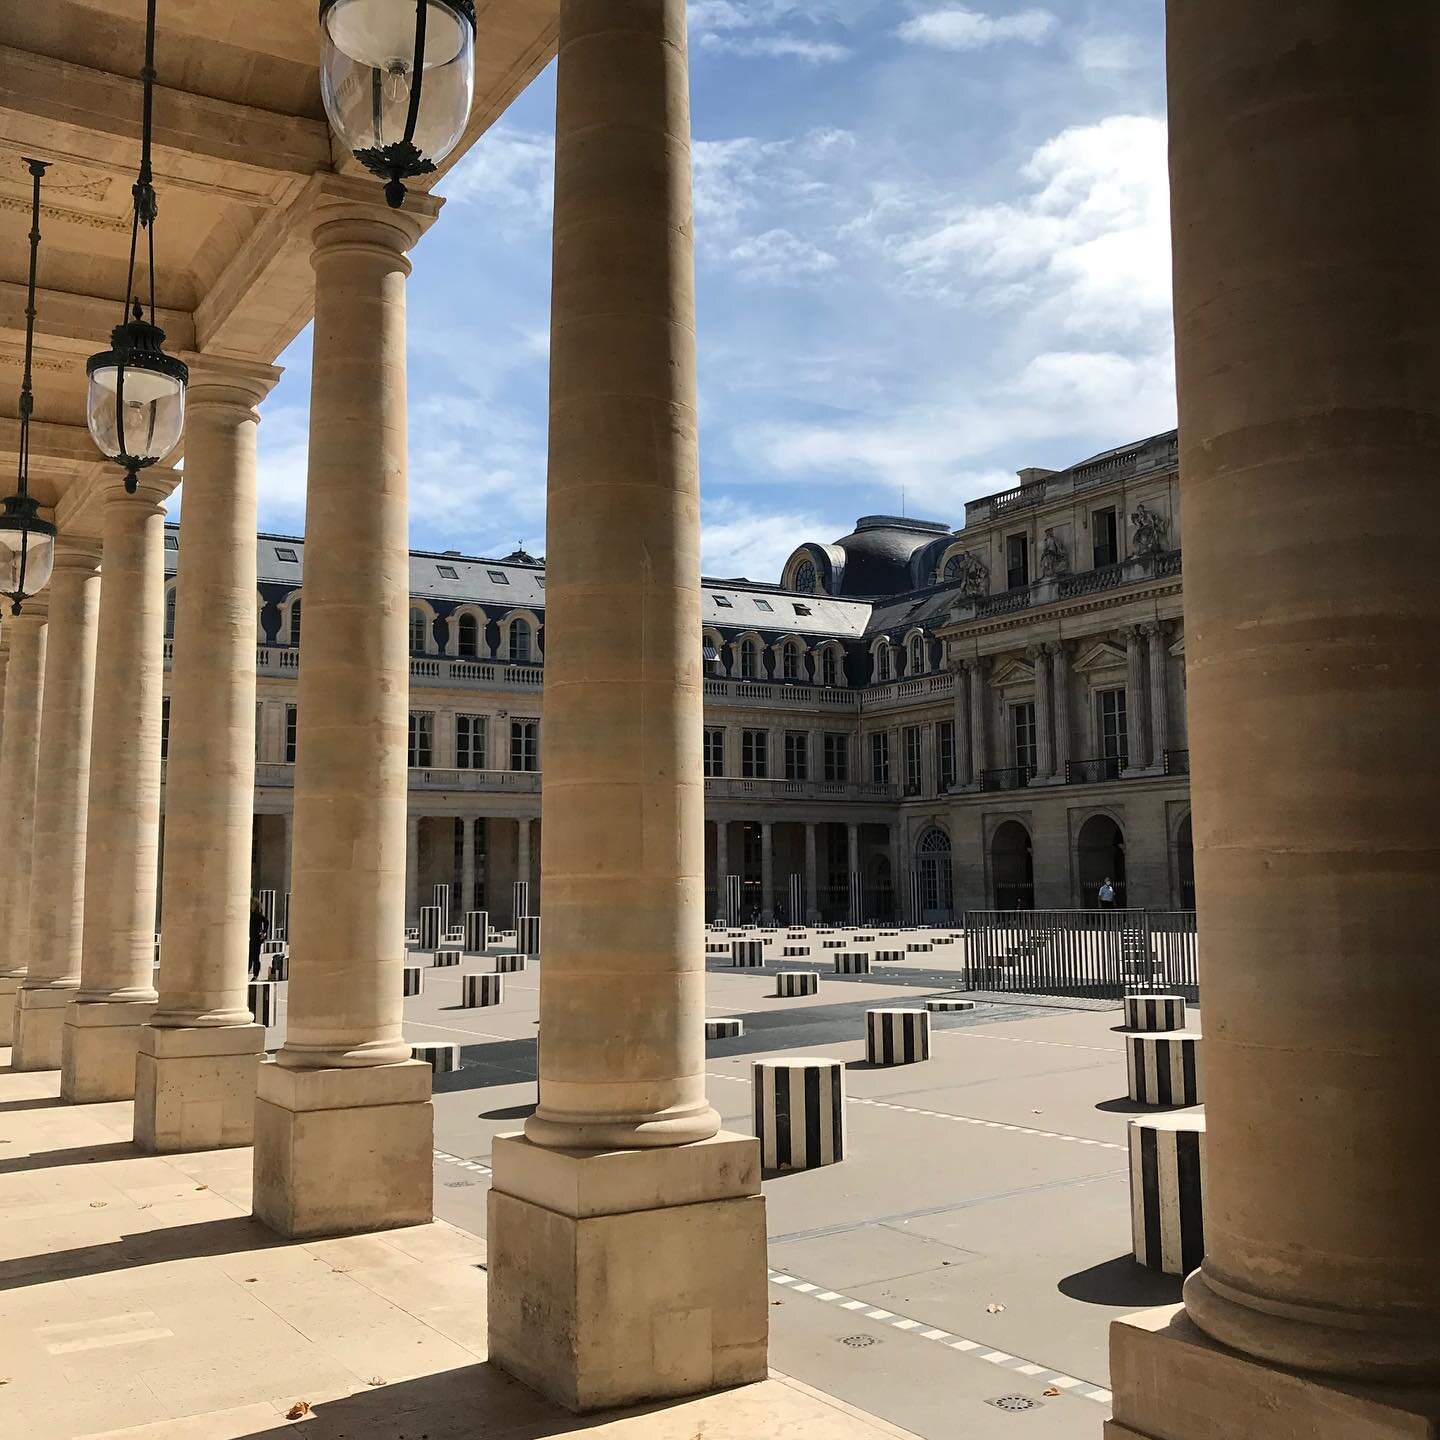 Palais-Royal-Colonnade-Buren-Parisology.jpg